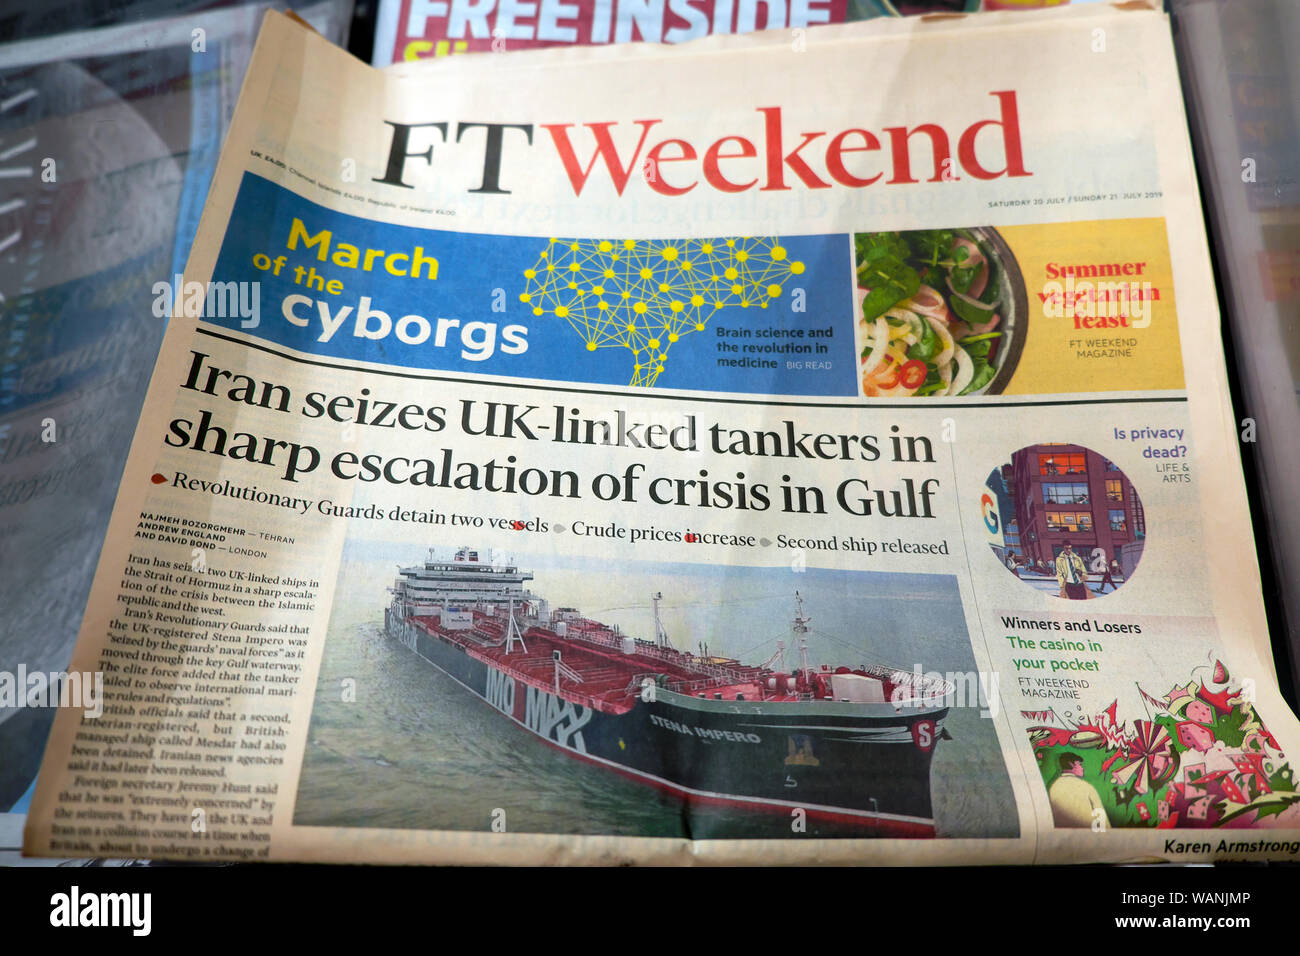 "Iran beschlagnahmt Großbritannien verbunden Tanker in scharfe Eskalation der Krise im Golf" Financial Times FT Wochenende Zeitung Titelseite Überschrift in London UK Juli 2019 Stockfoto